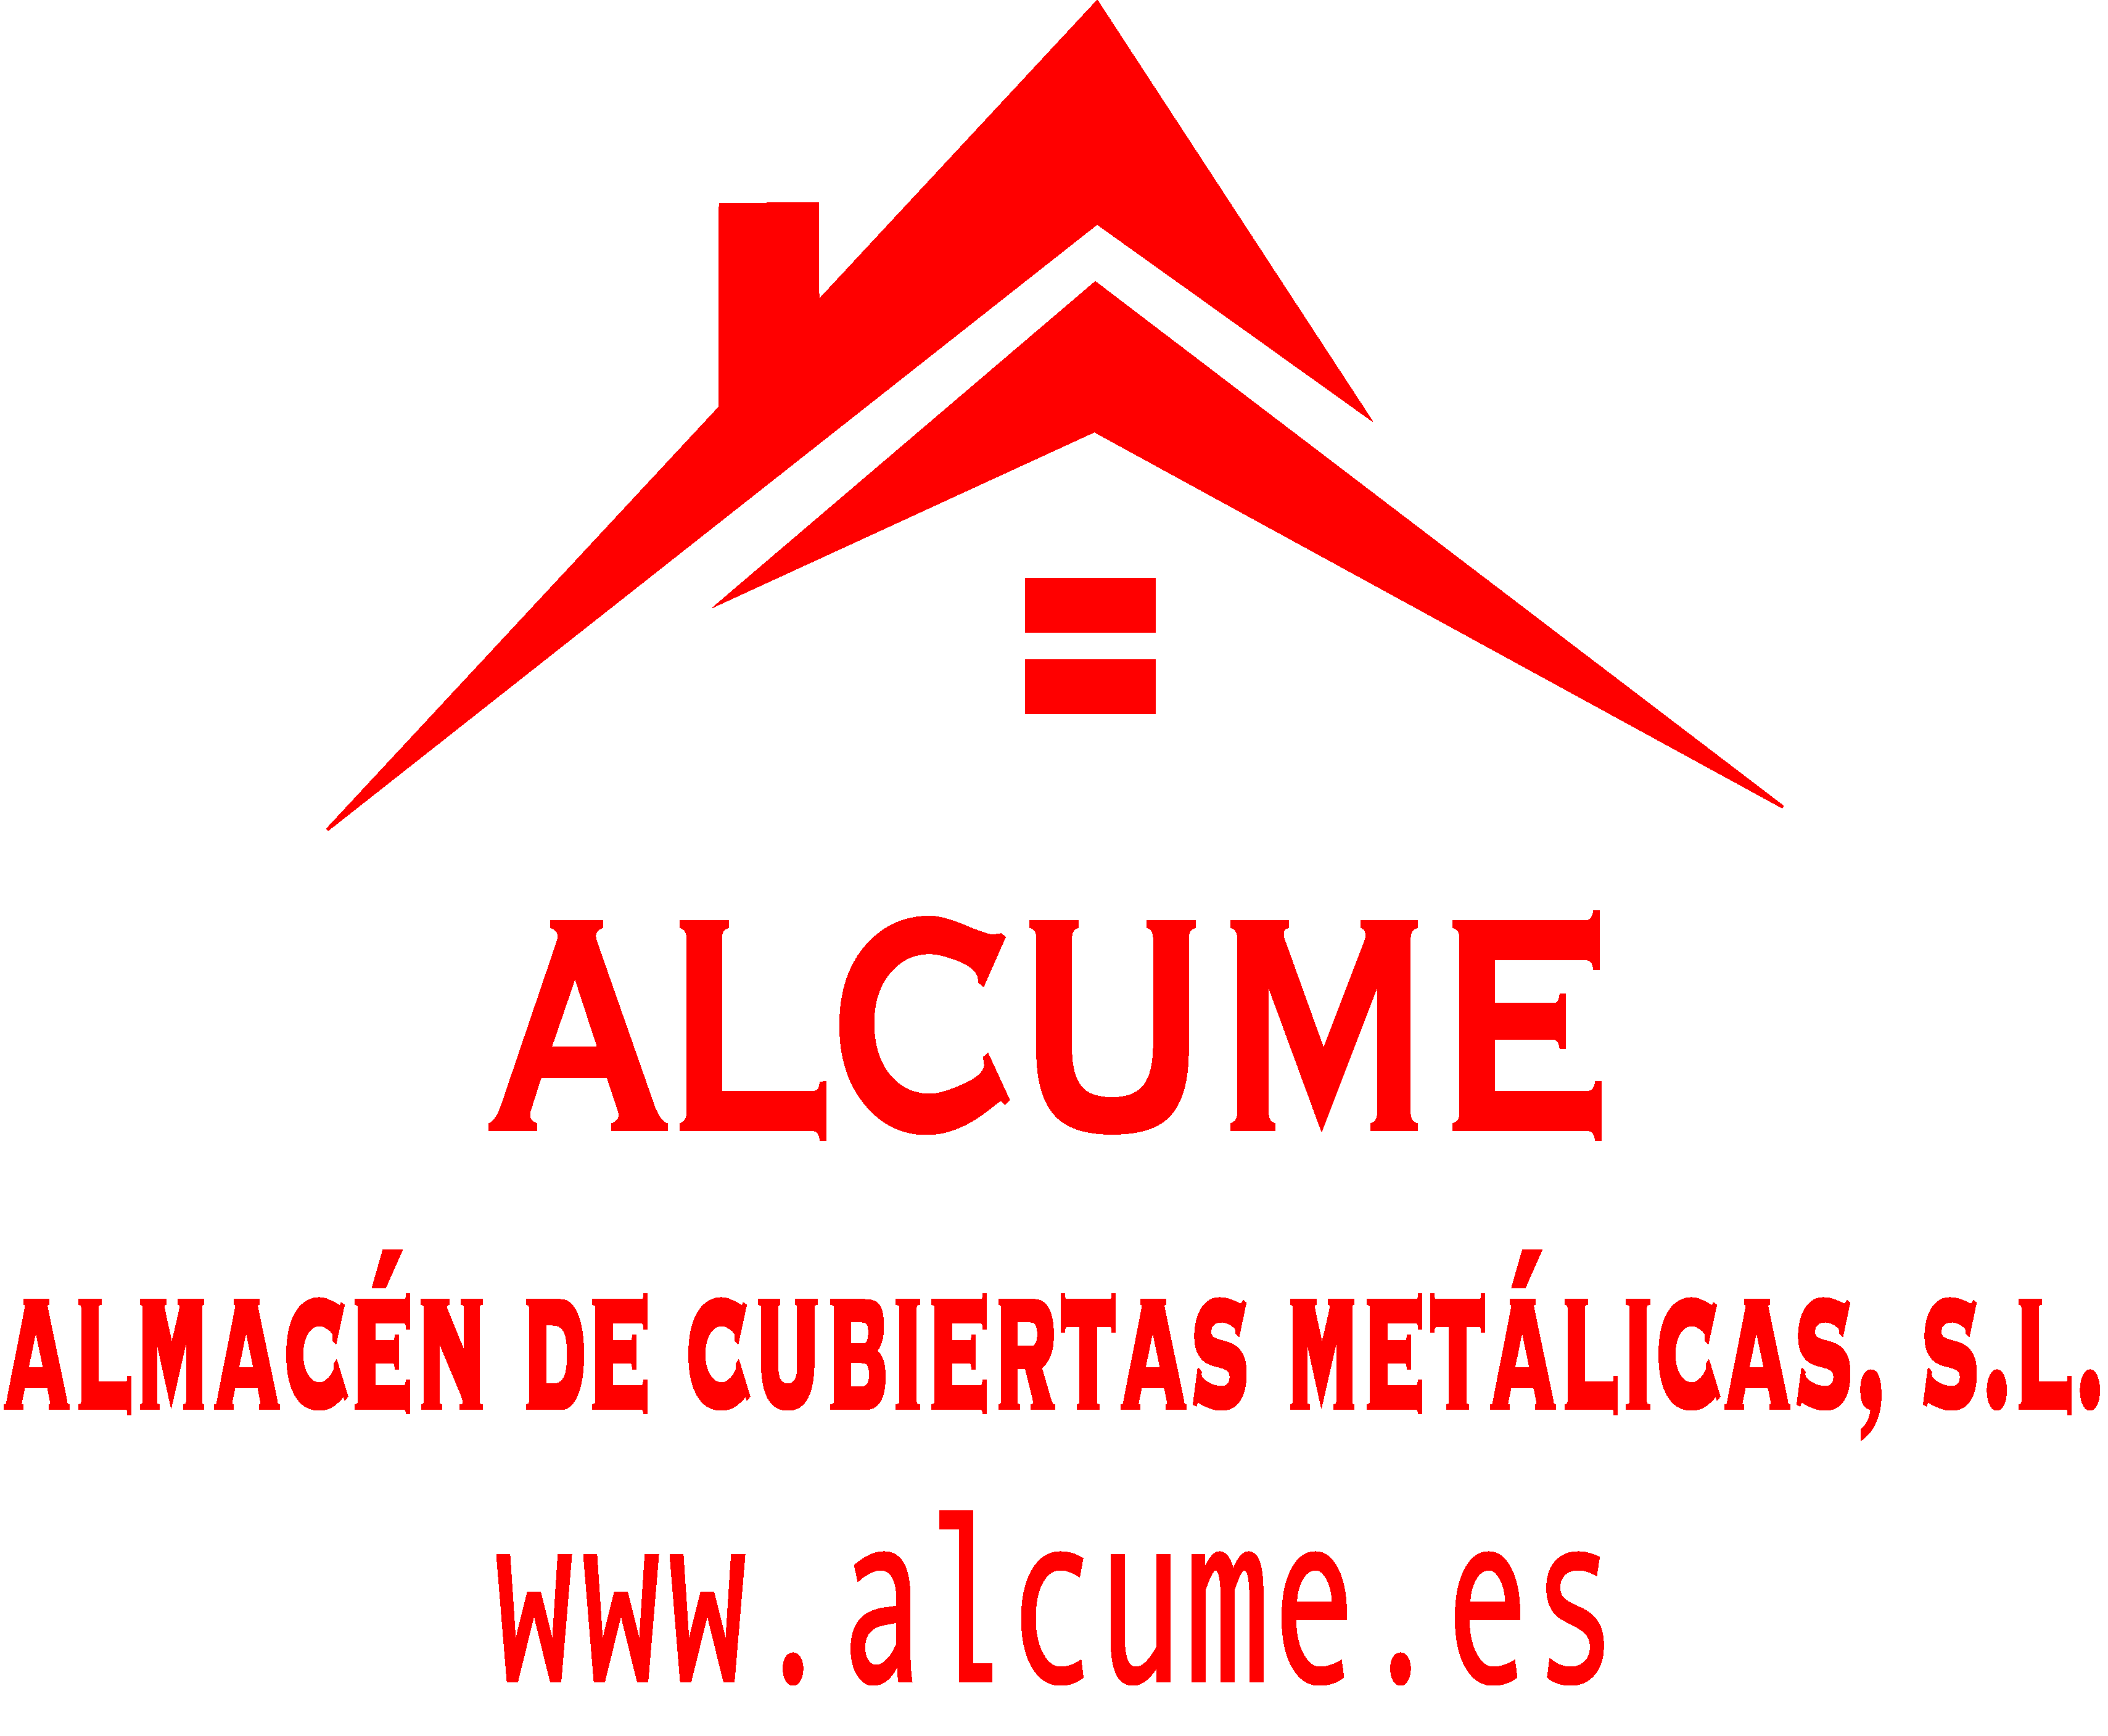 Alcume